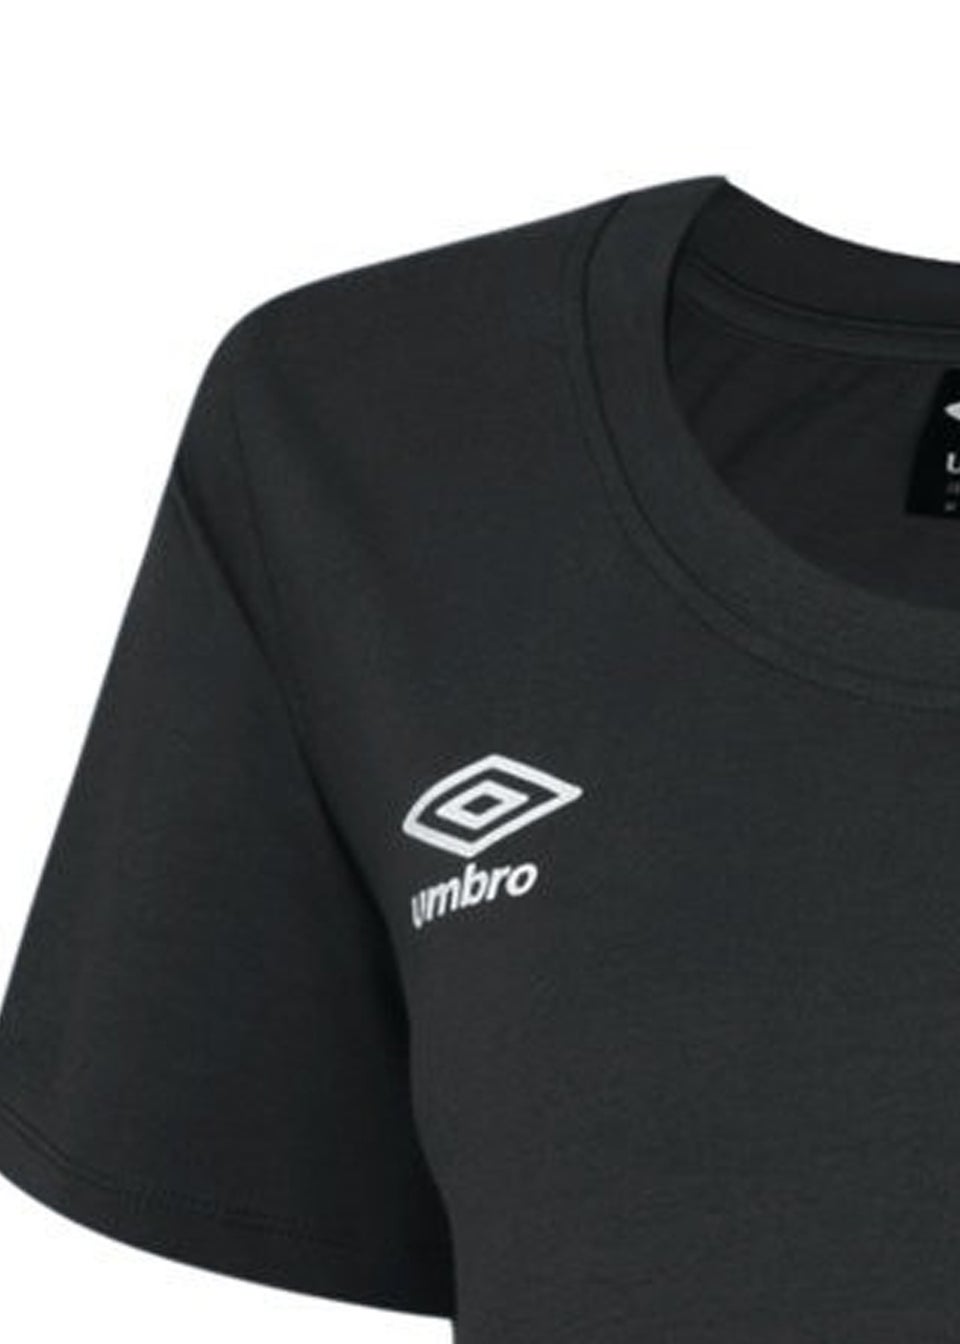 Umbro Black/White Club Leisure T-Shirt